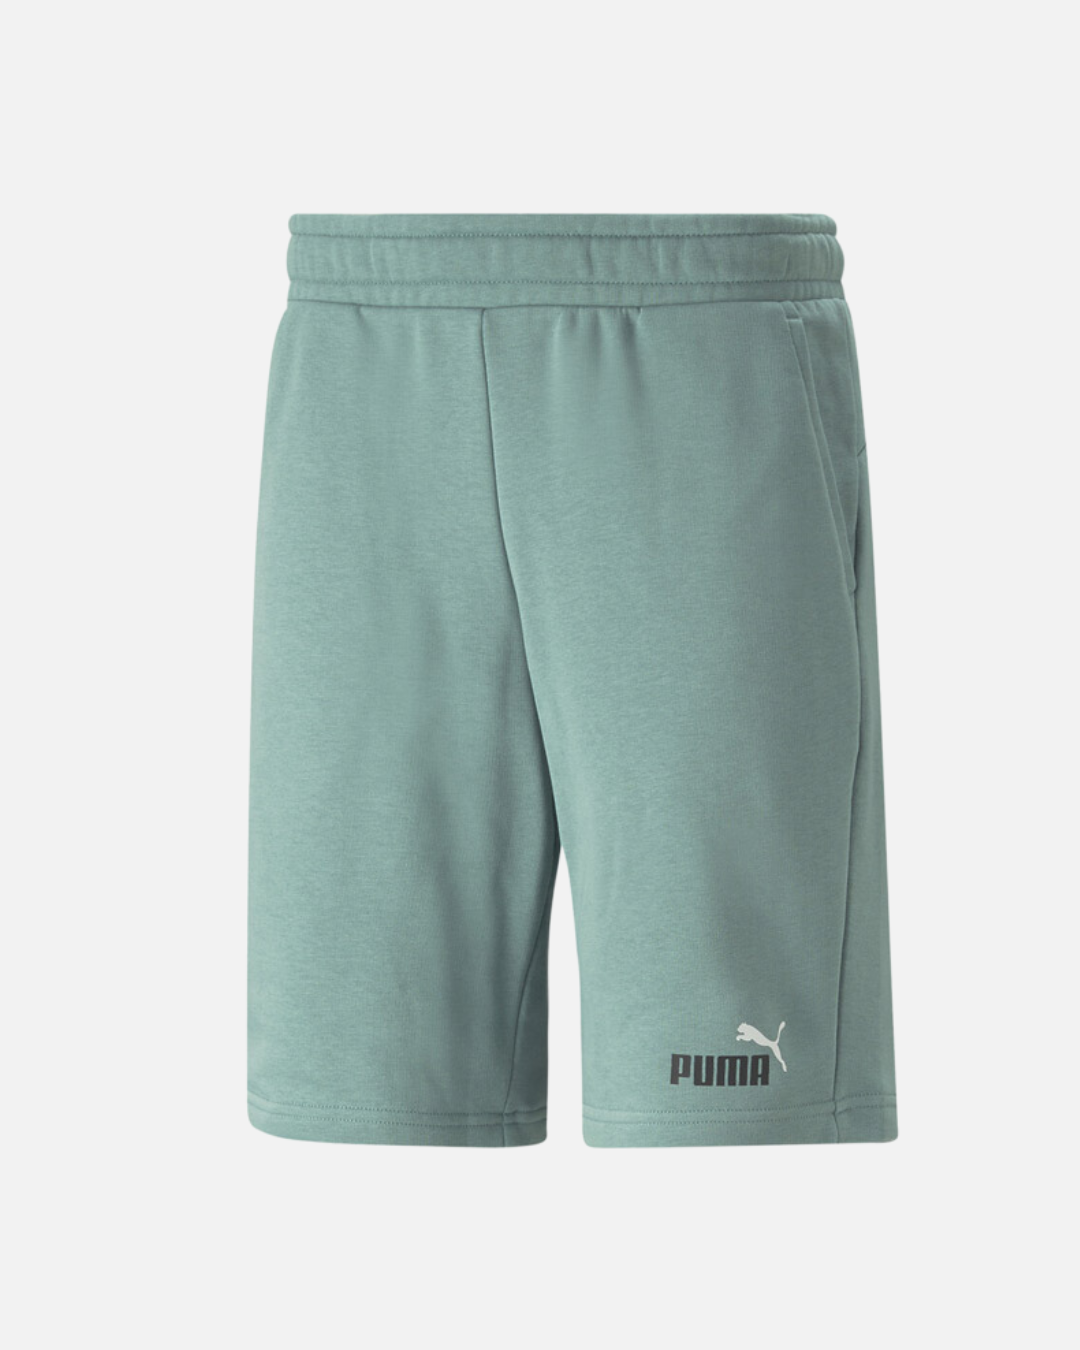 Puma Essentials Shorts - Green